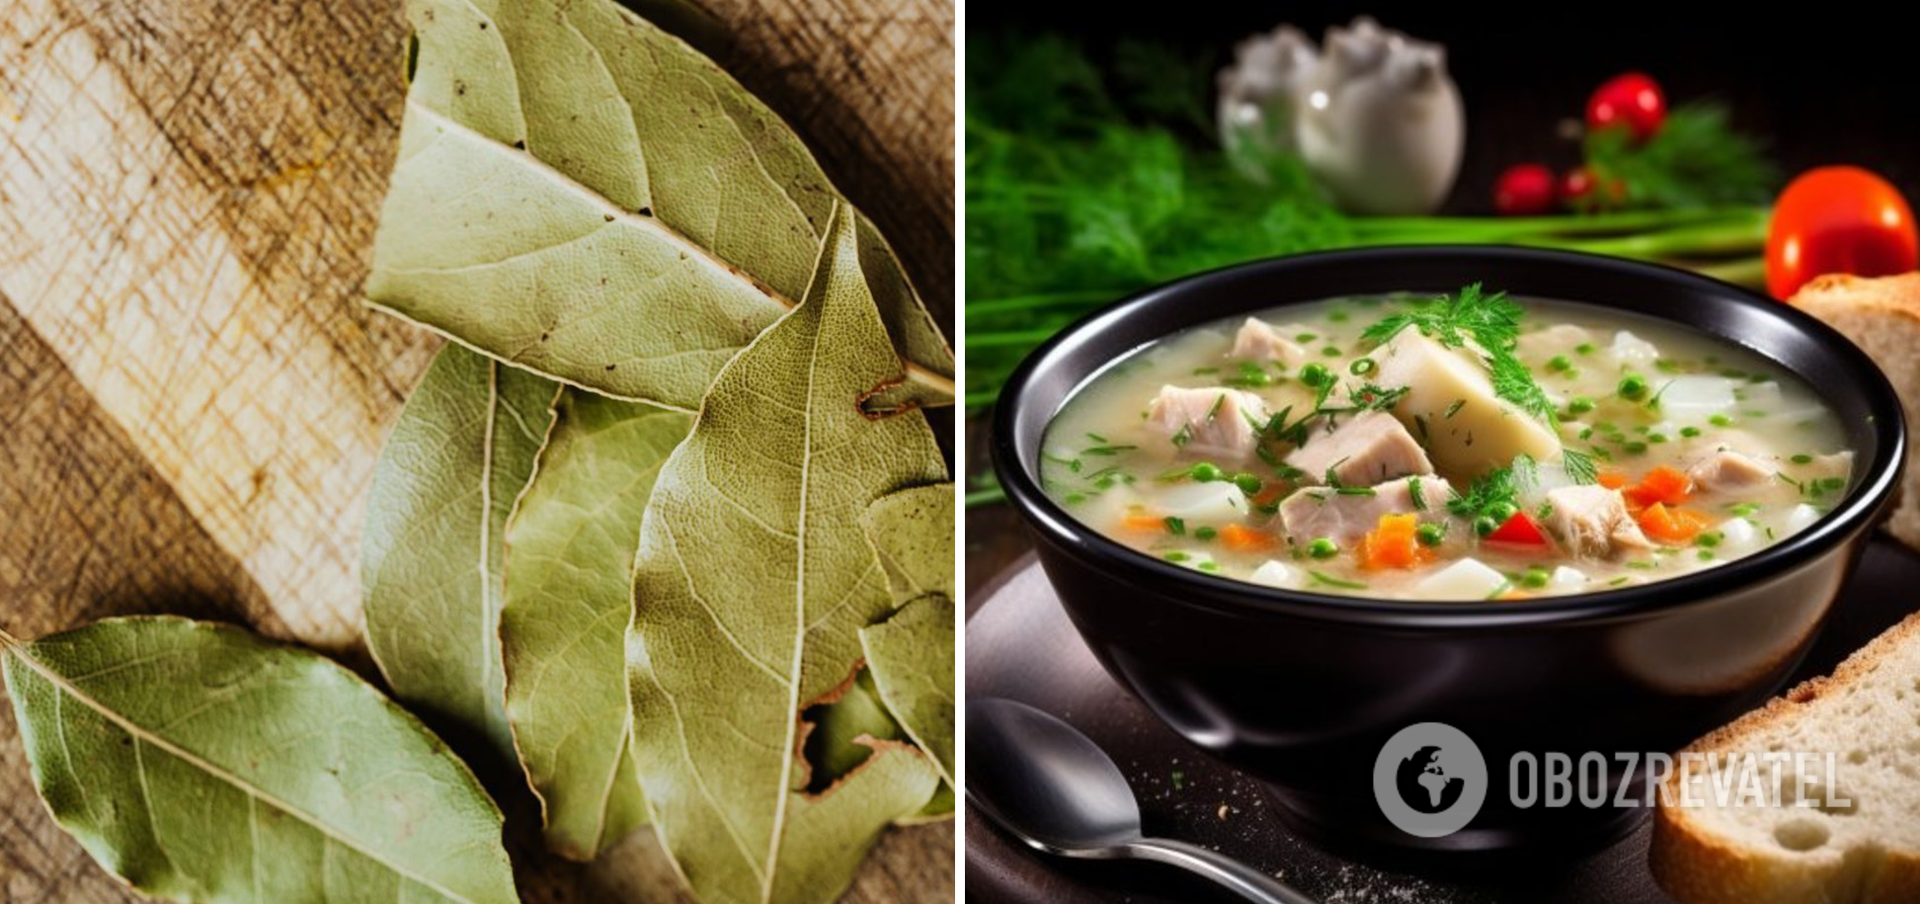 Чому лаврове листя може зіпсувати суп та борщ